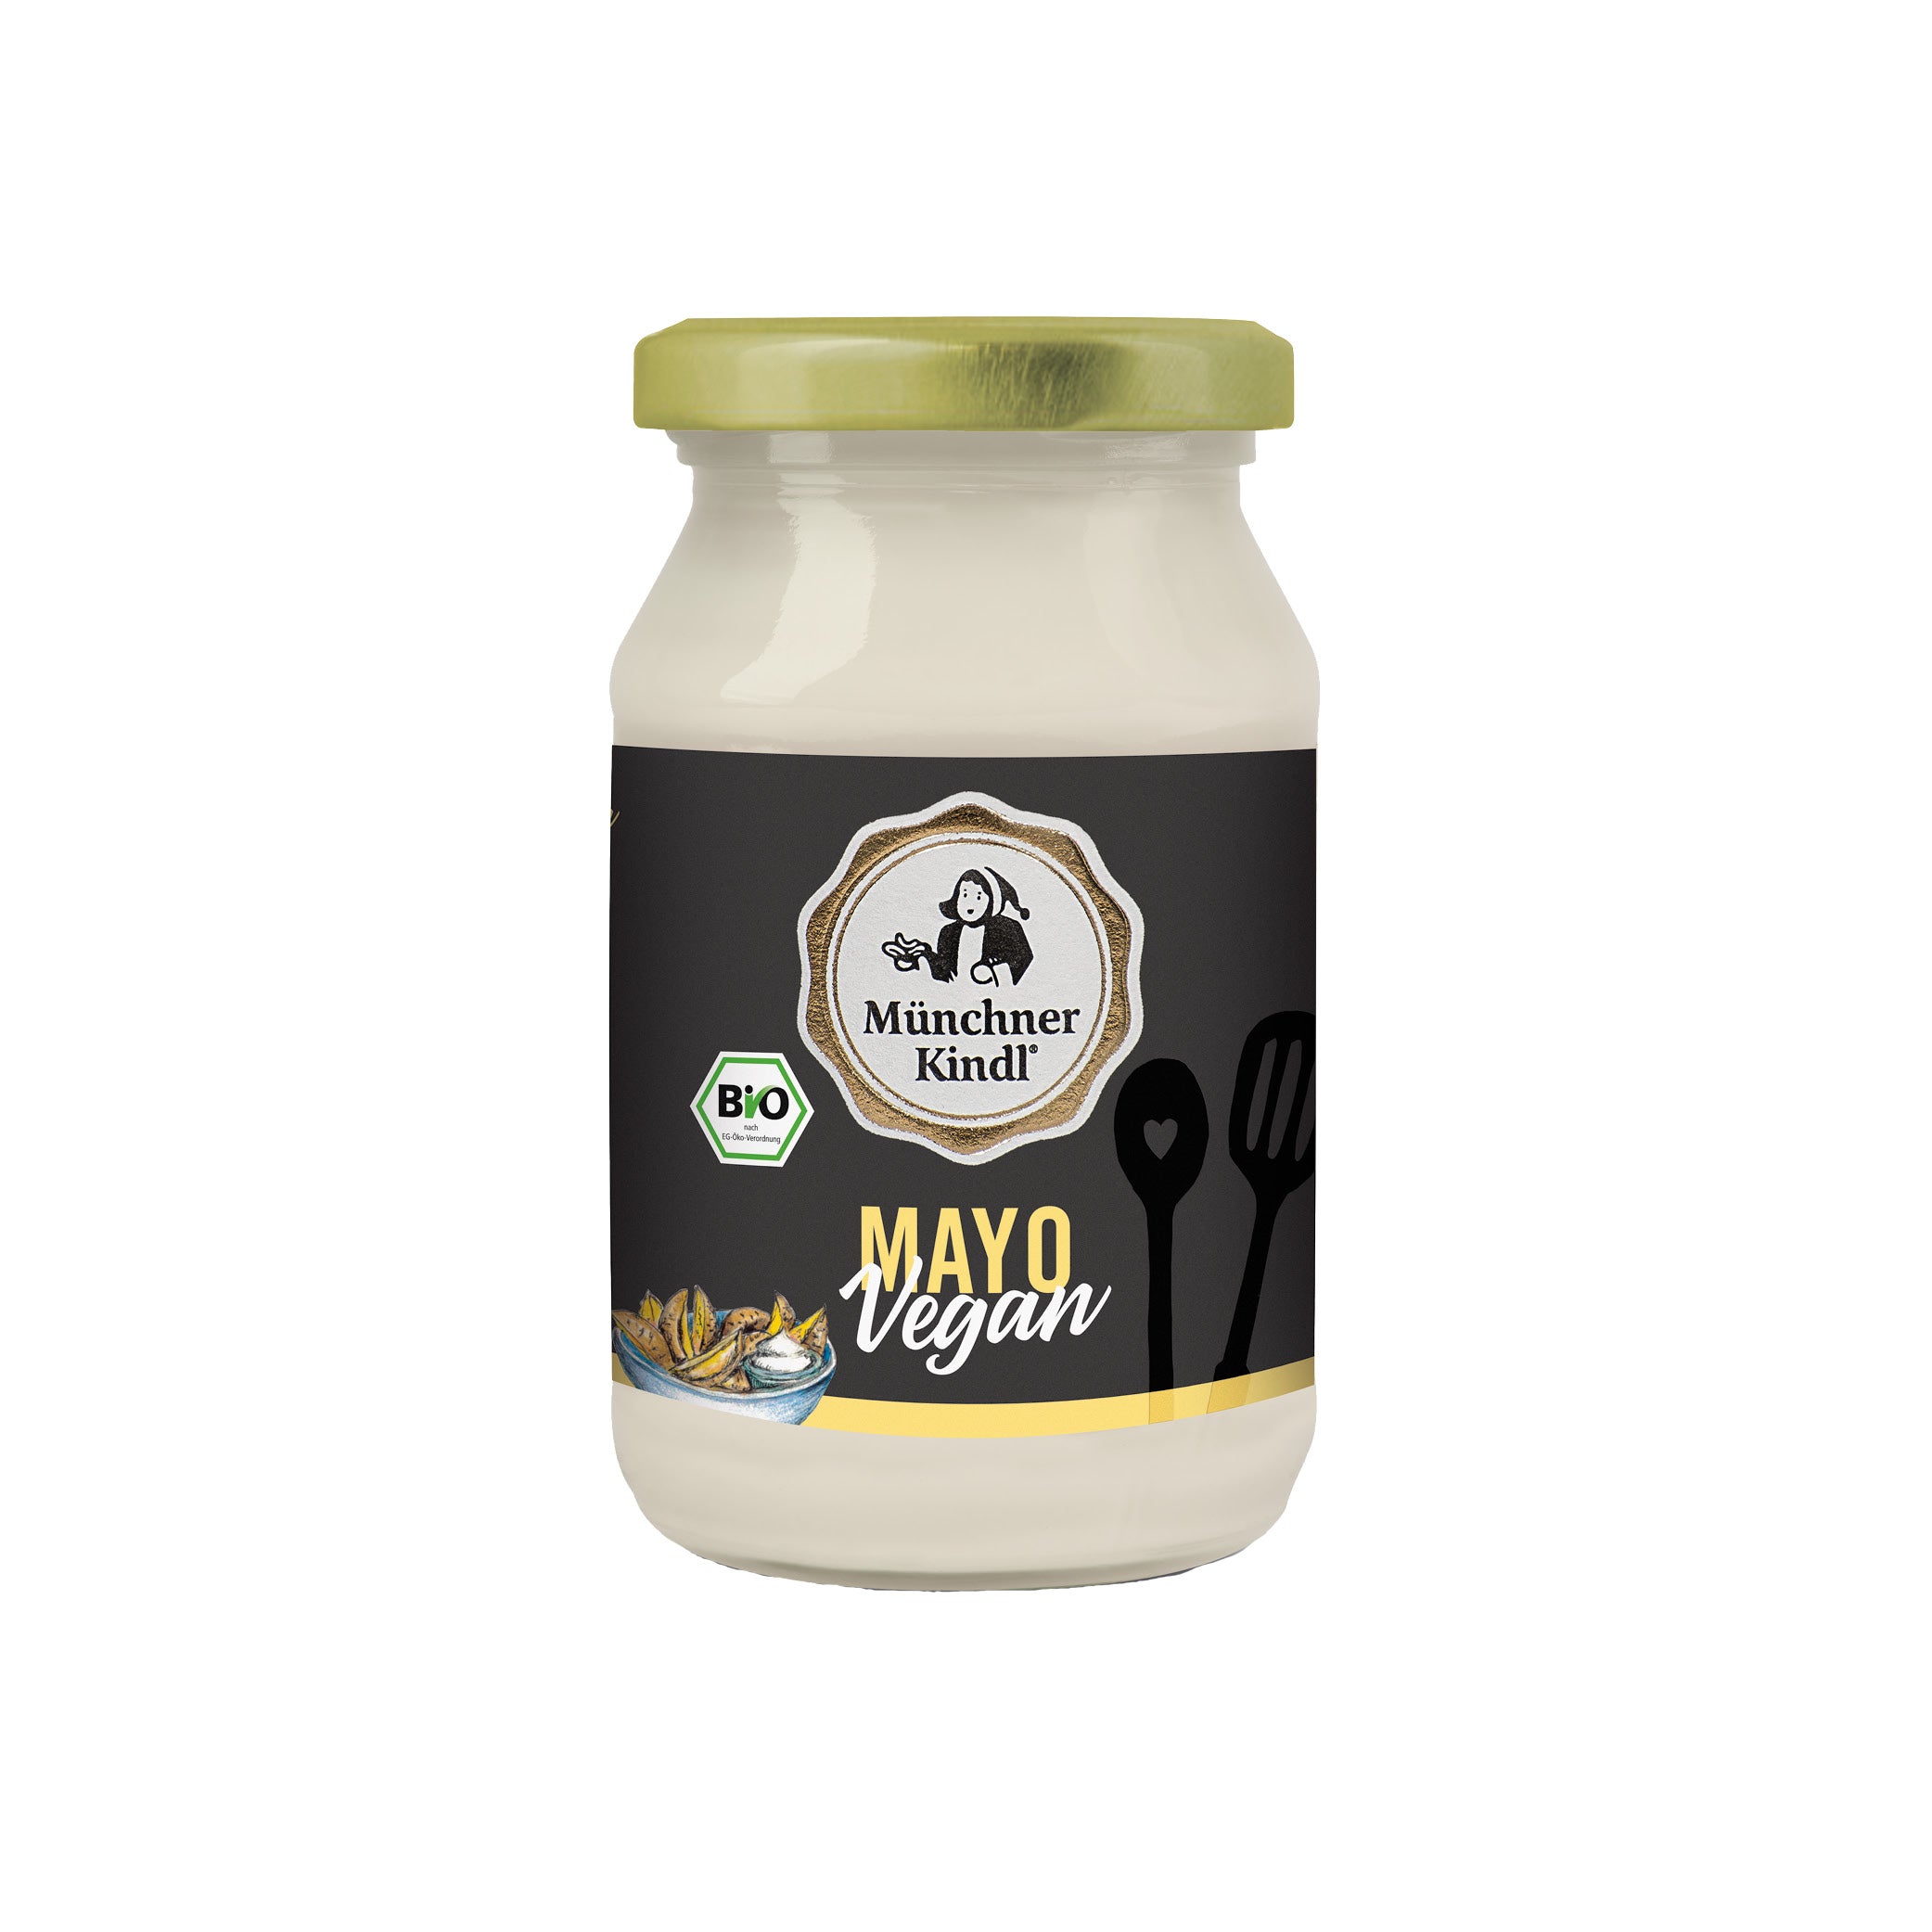 Vegane Mayo